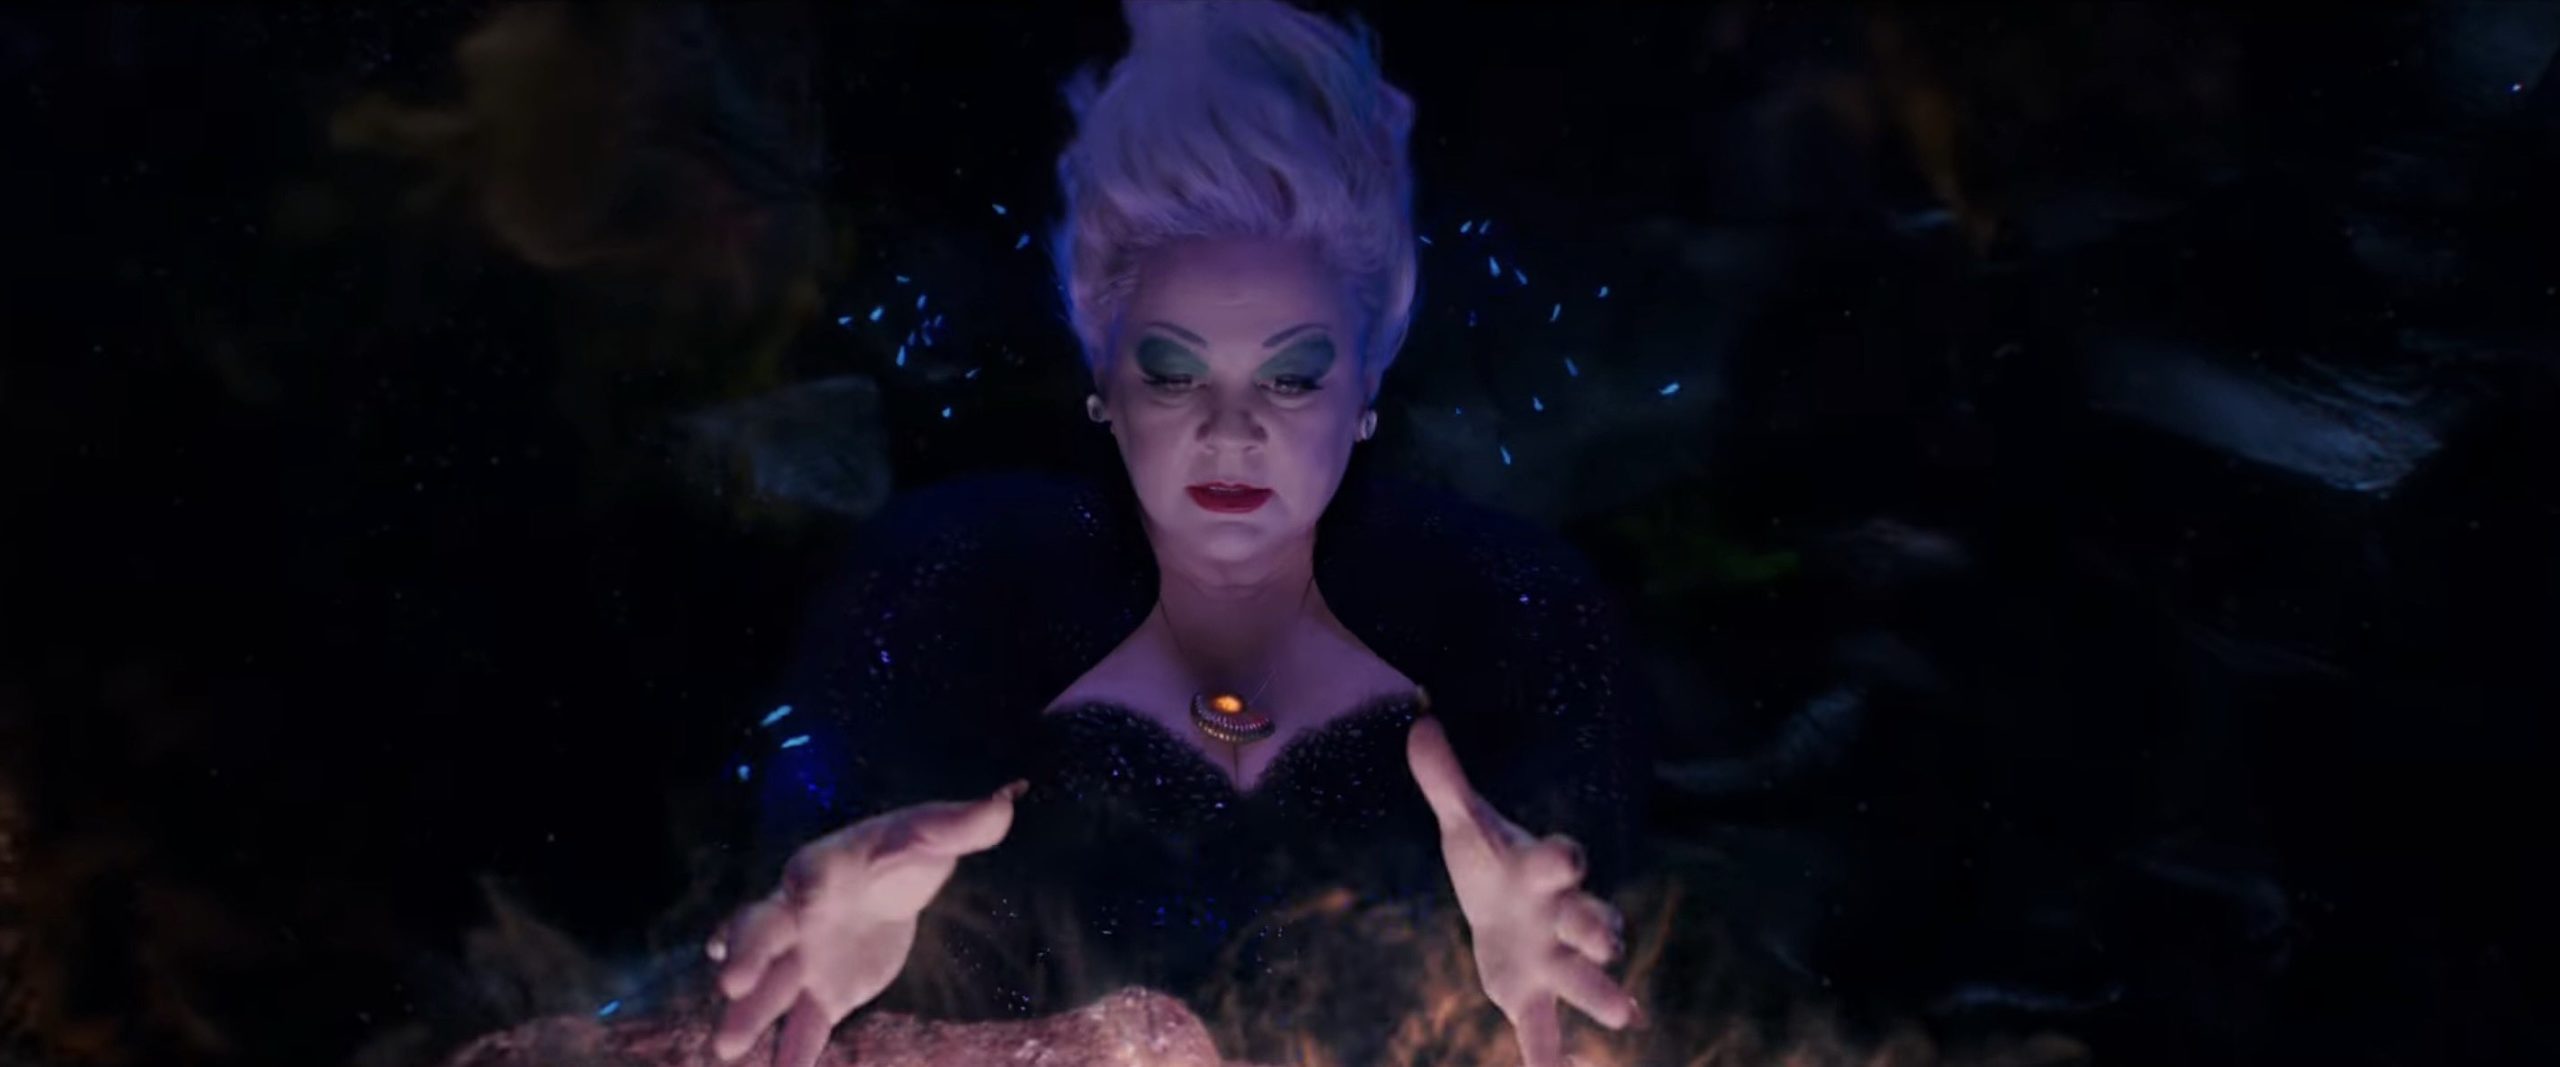 Ursula casts a spell